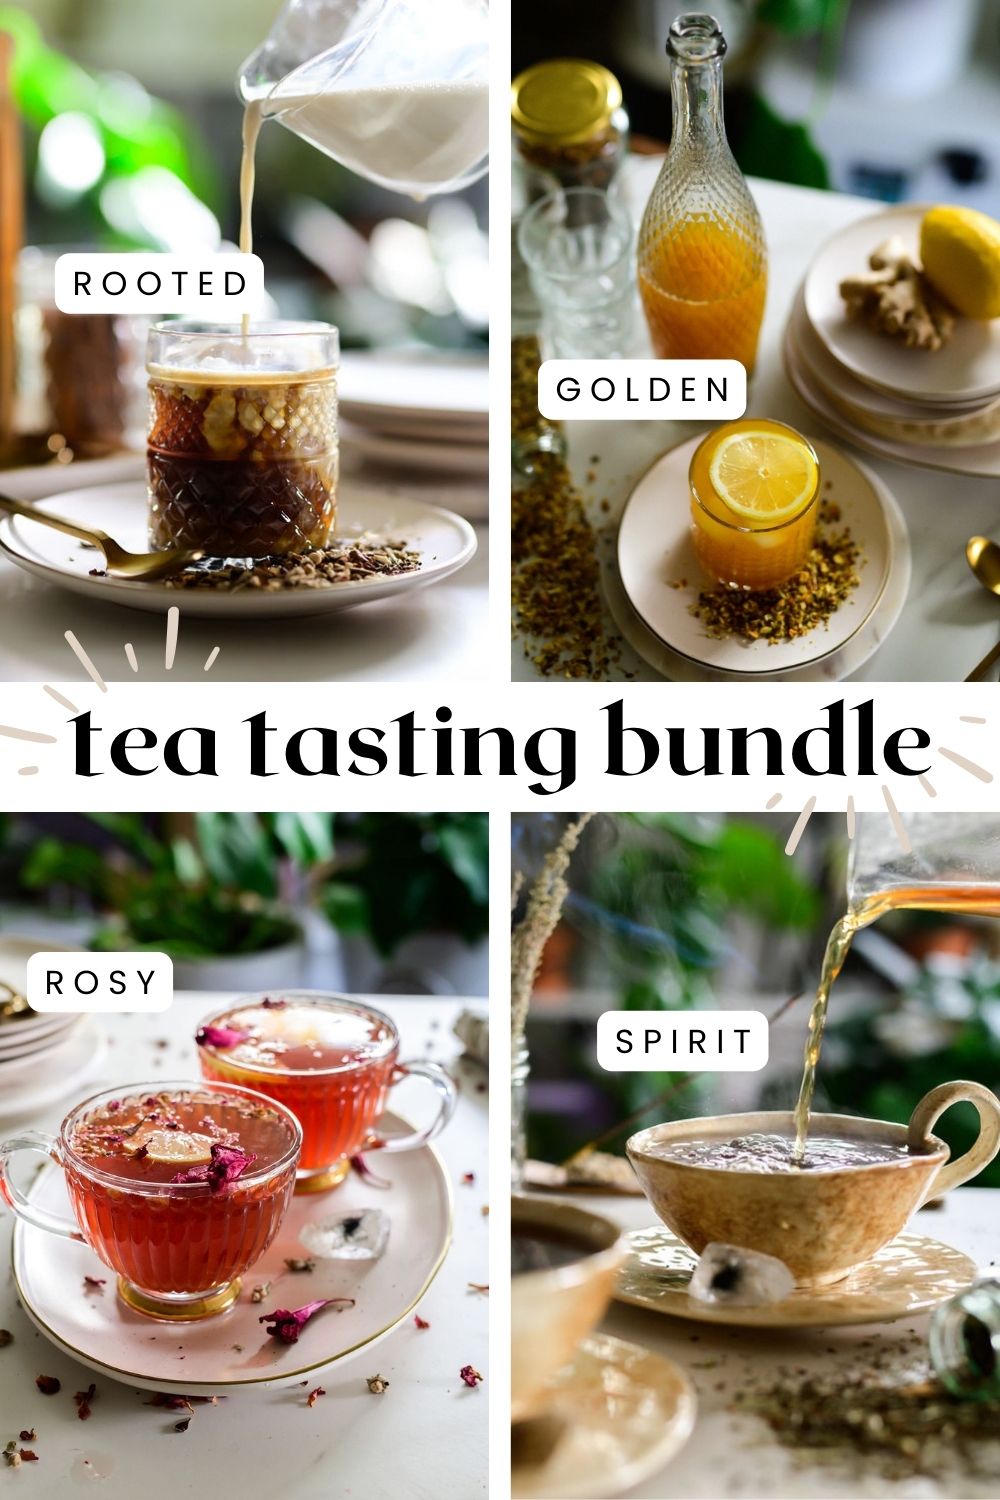 Tisane Tasting | Bundle of 4 Herbal Teas